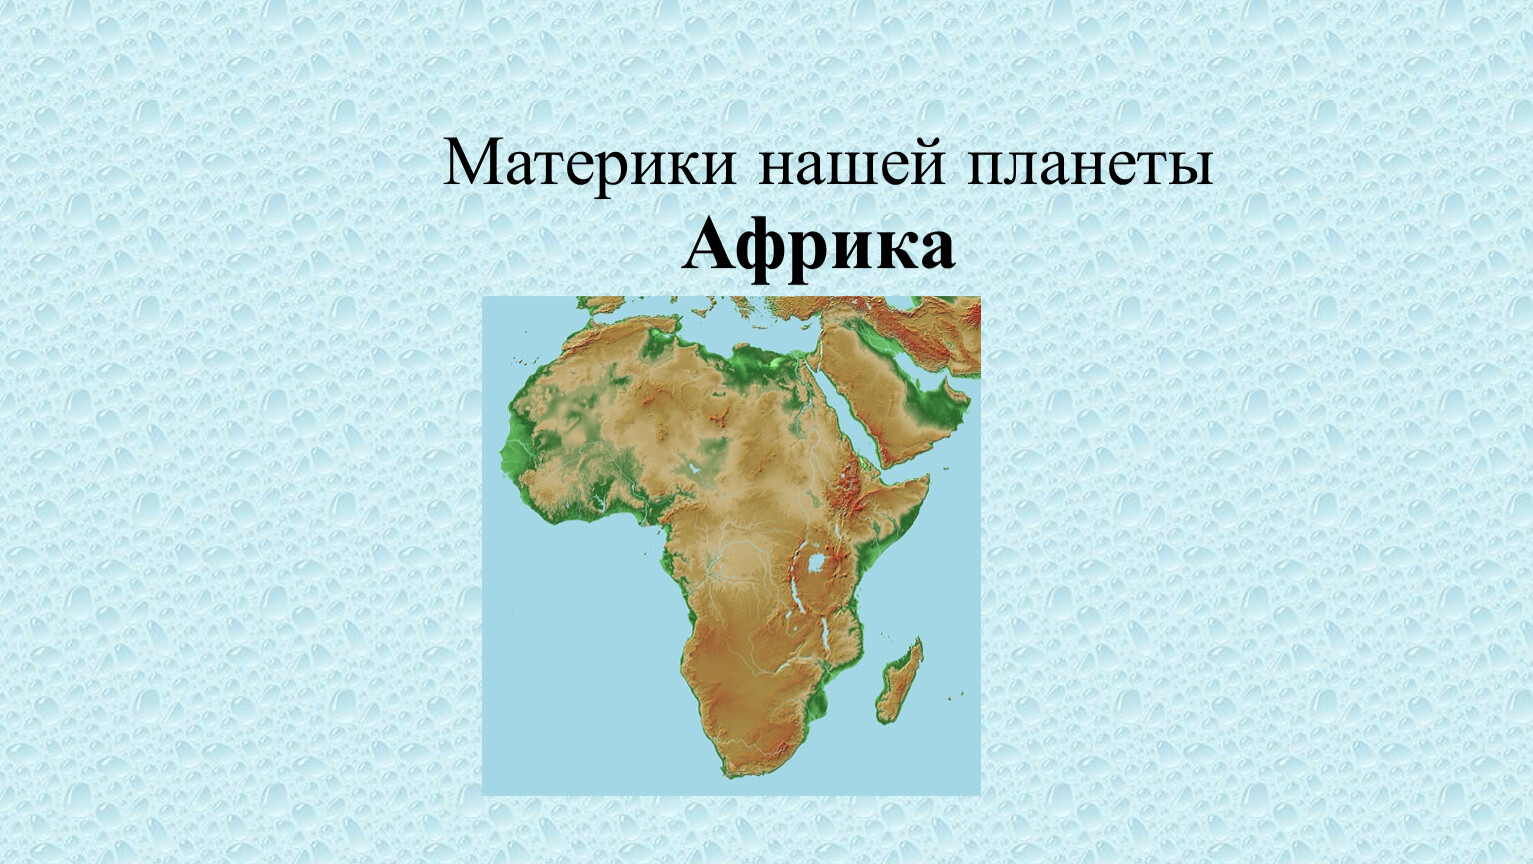 Какое место среди материков занимает северная америка. Курорты Африки презентация. Материк занимает 3 место по площади территории. Рыбы Африки презентация. Презентация Африка Раменская.